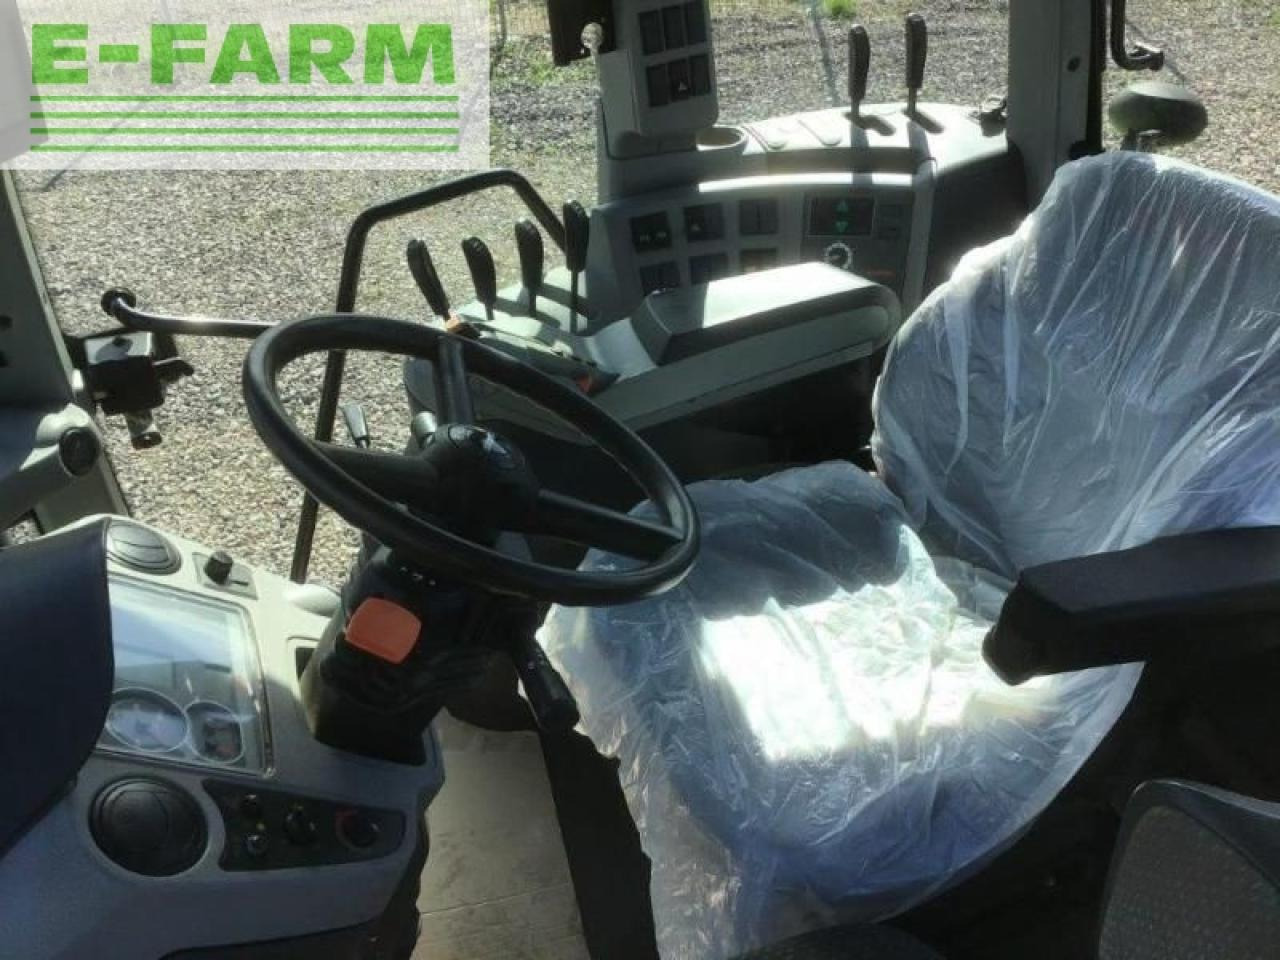 Farm tractor CLAAS arion 640 cis CIS